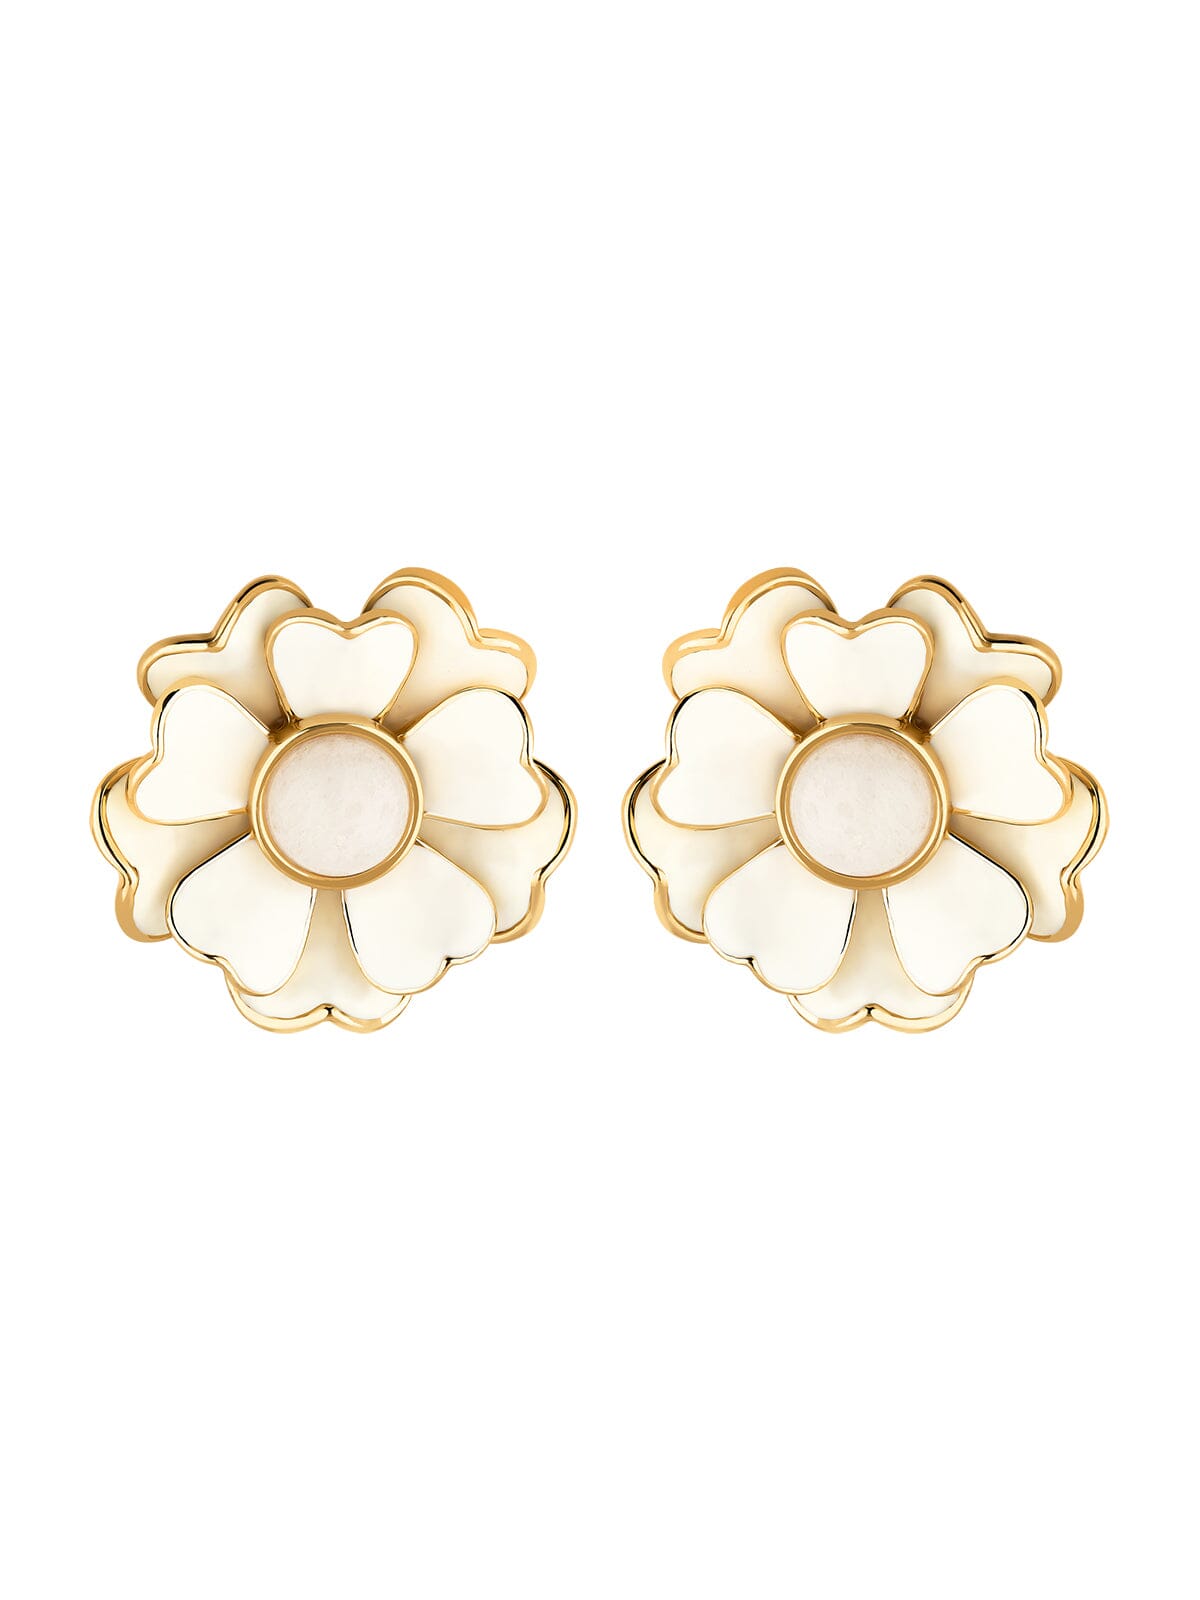 White Enamel Flower Earrings - Vinty Jewelry